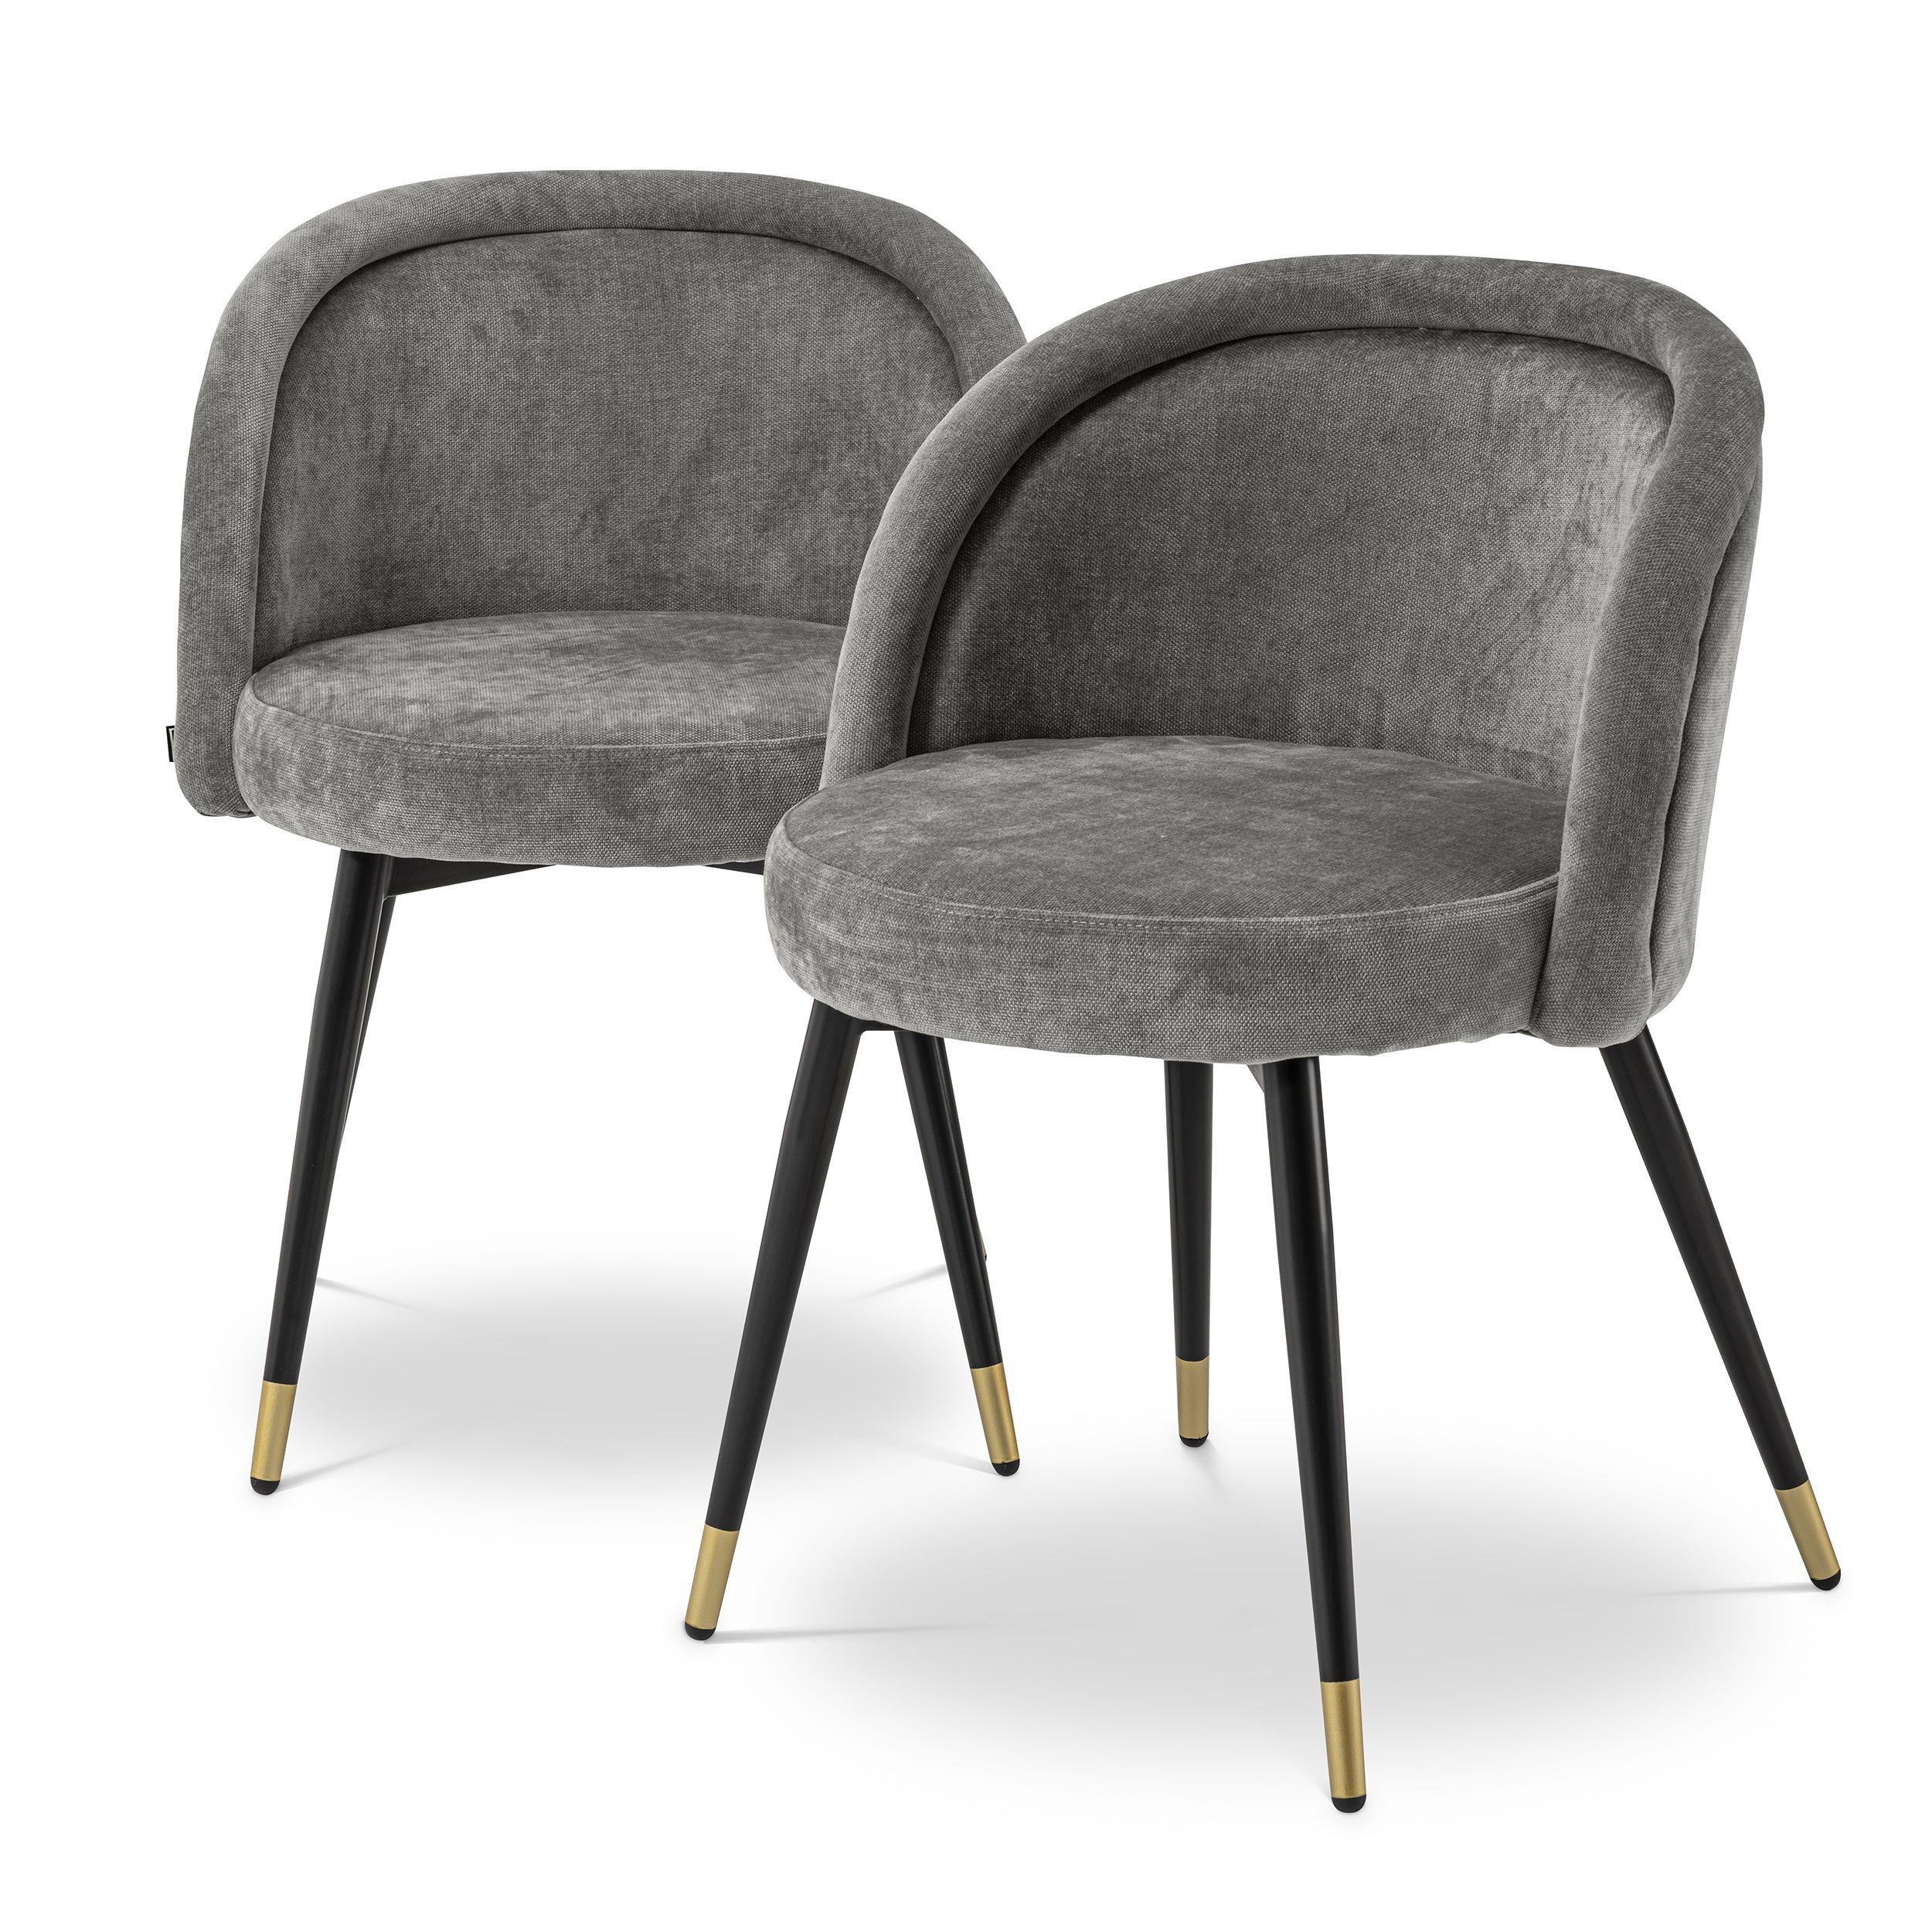 Купить Стул без подлокотника Dining Chair Chloé set of 2 в интернет-магазине roooms.ru